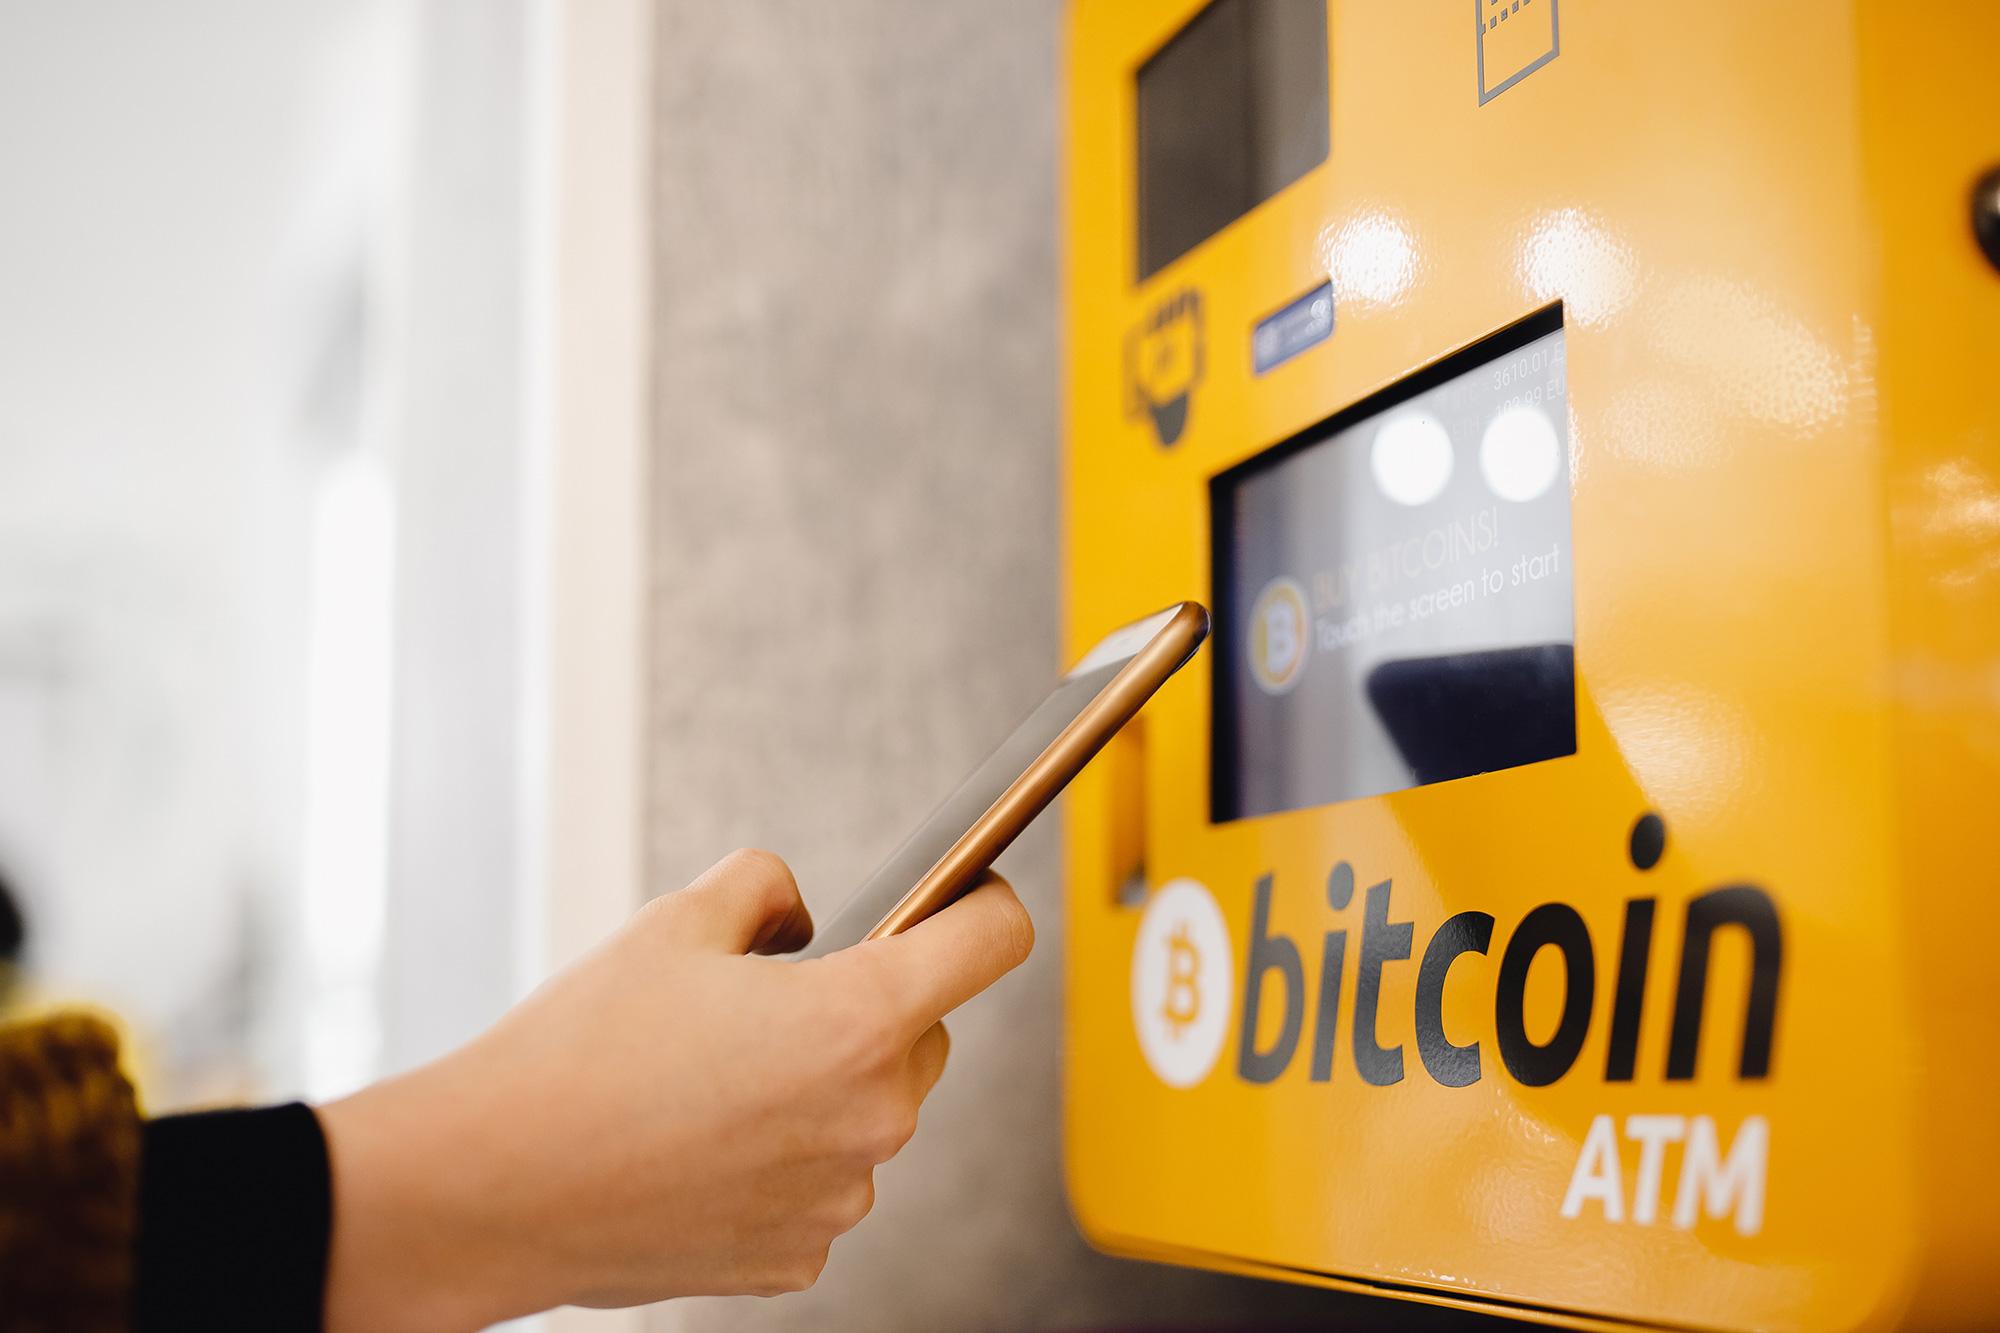 Bitcoin ATM'leri, insanların fiziksel para kullanarak Bitcoin gibi dijital para birimlerini satın alabilecekleri veya satabilecekleri otomatik makinelerdir. Geleneksel ATM'ler gibi çalışırlar, ancak bunlar Bitcoin işlemleri yaparlar.